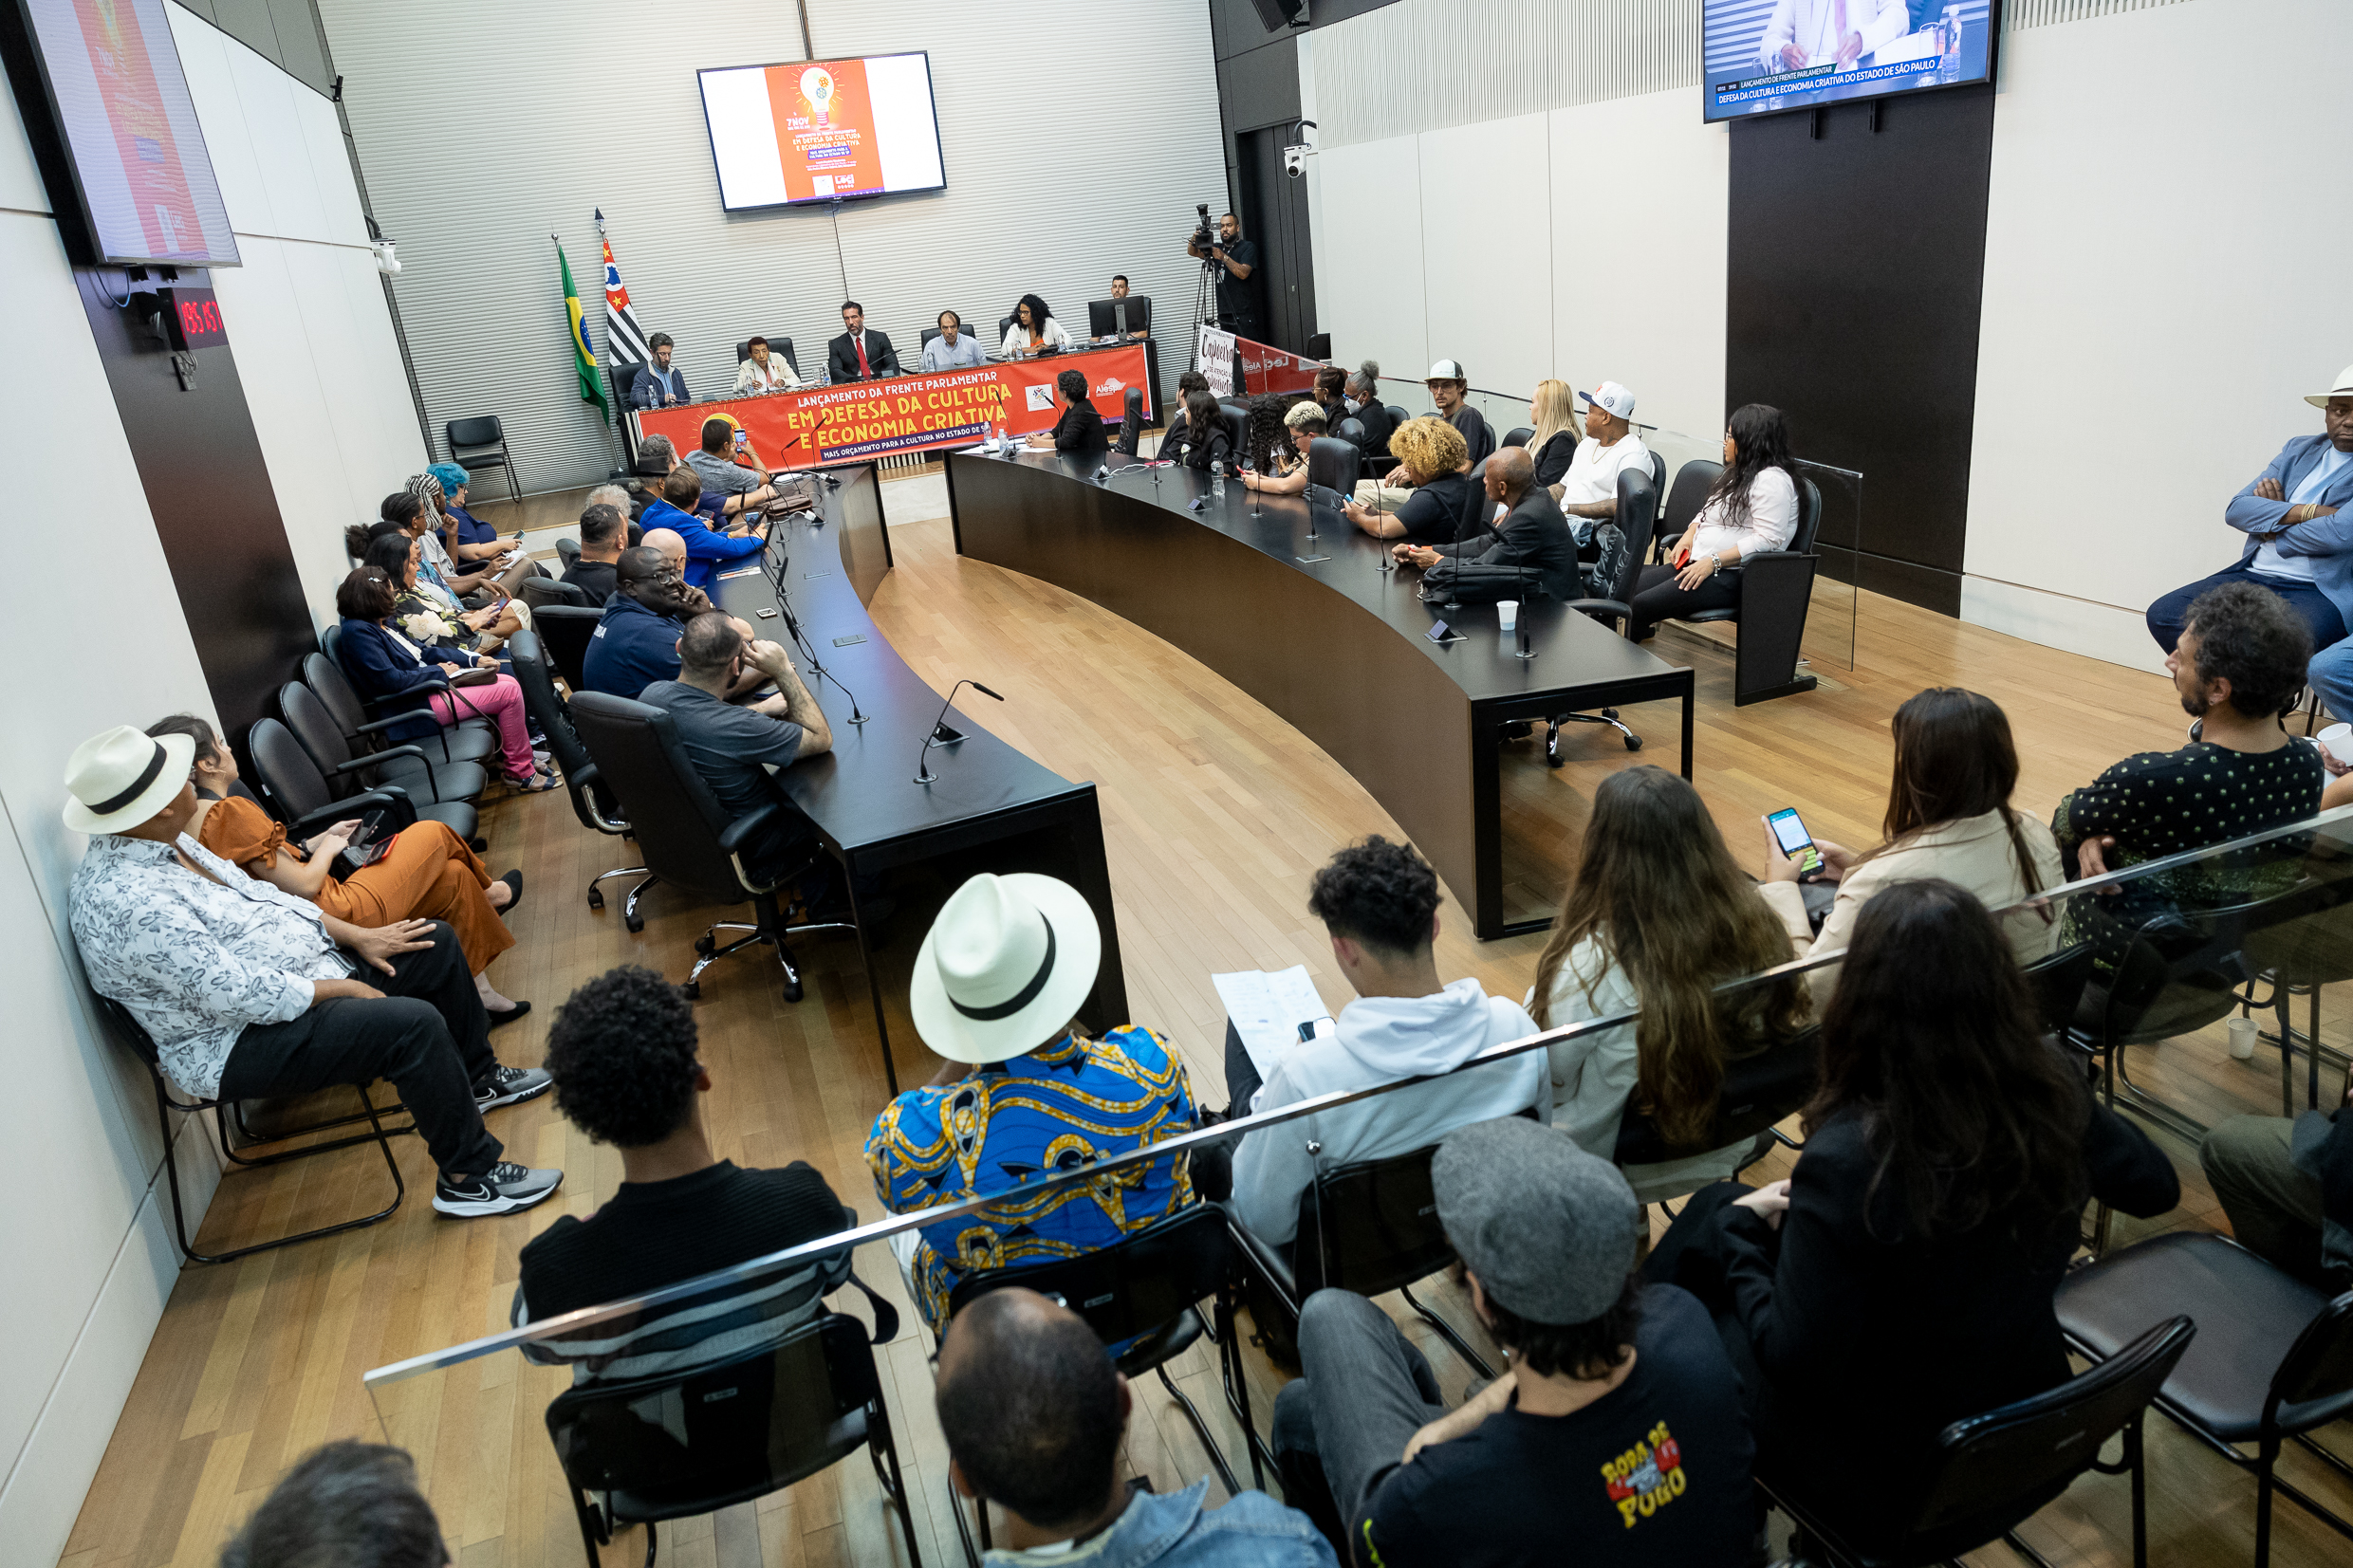 aula de canto – Secretaria da Cultura, Economia e Indústria Criativas do  Estado de São Paulo